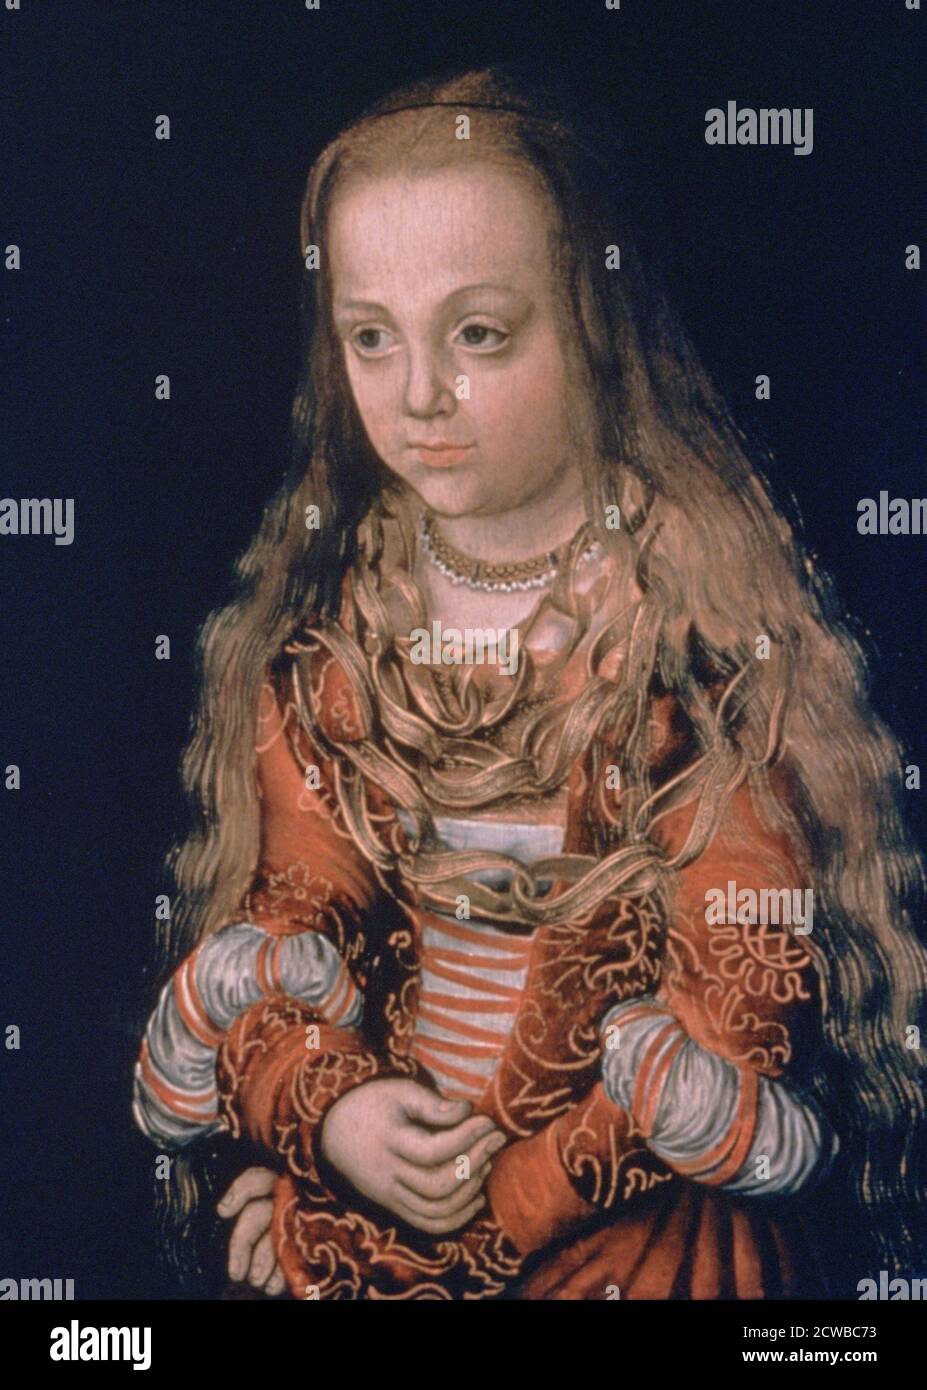 Peinture de Lucas Cranach l'aîné intitulé "UNE princesse de Saxe", c1517. Fait partie de la collection de la National Gallery of Art, Washington DC, Etats-Unis. Banque D'Images